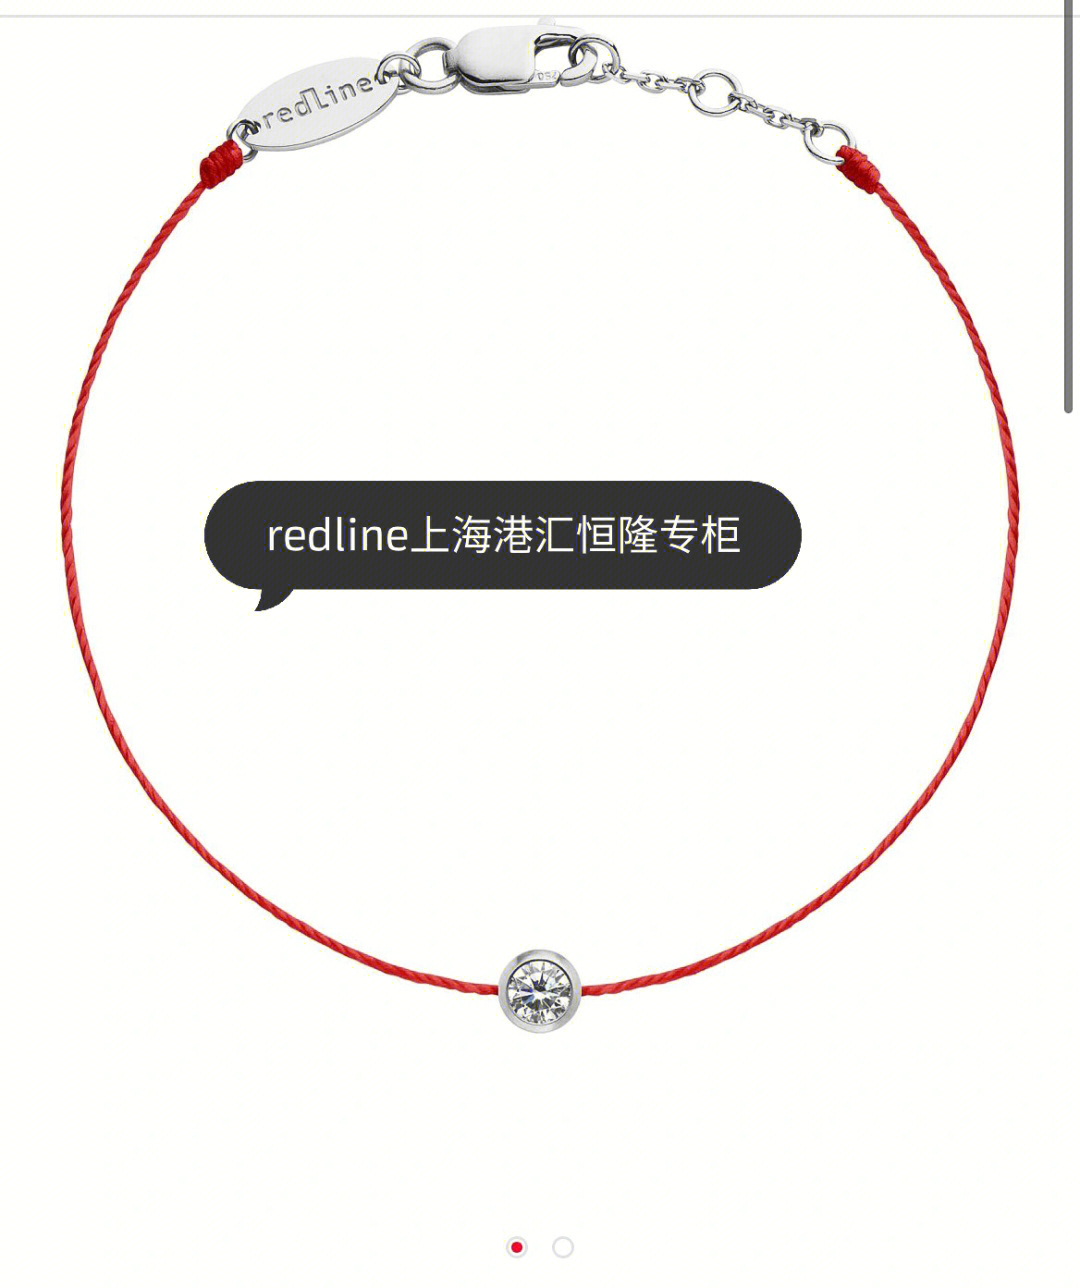 redline红绳钻石级别图片